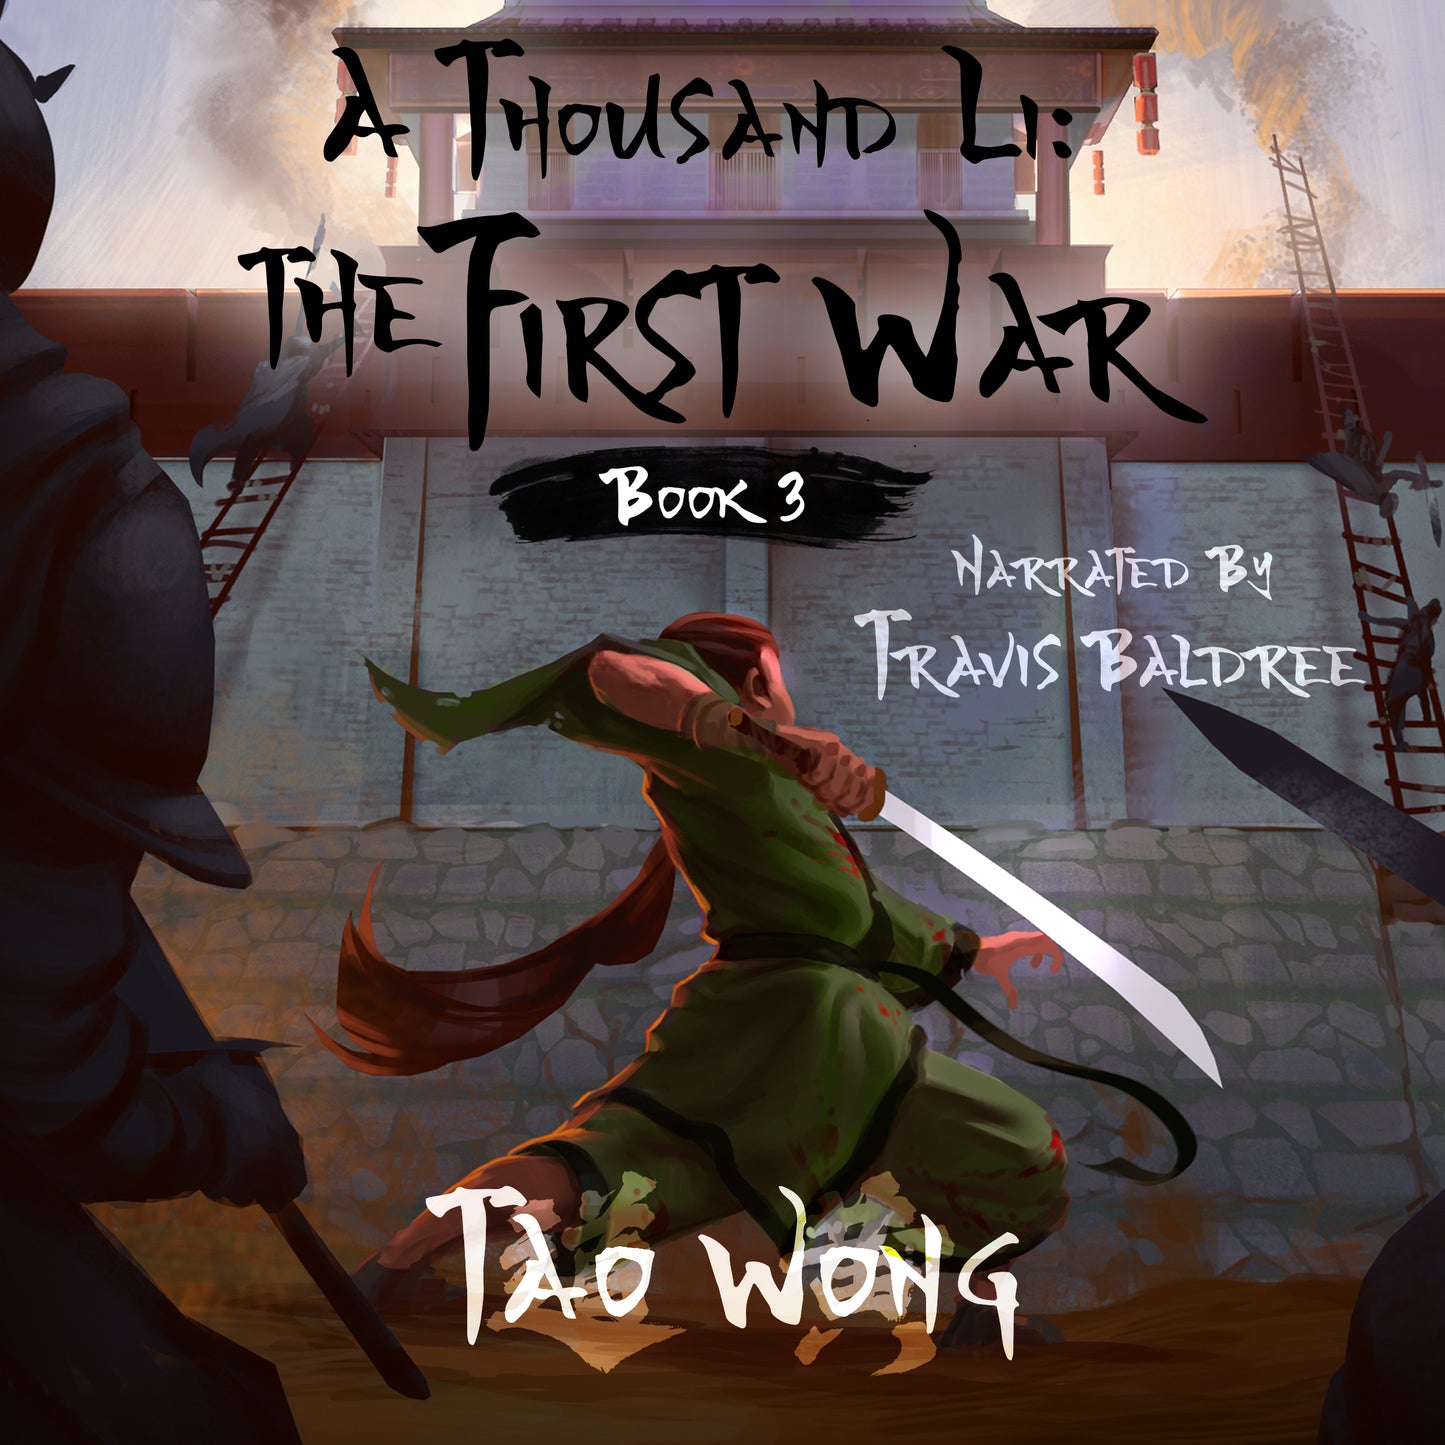 The First War (A Thousand Li #3)